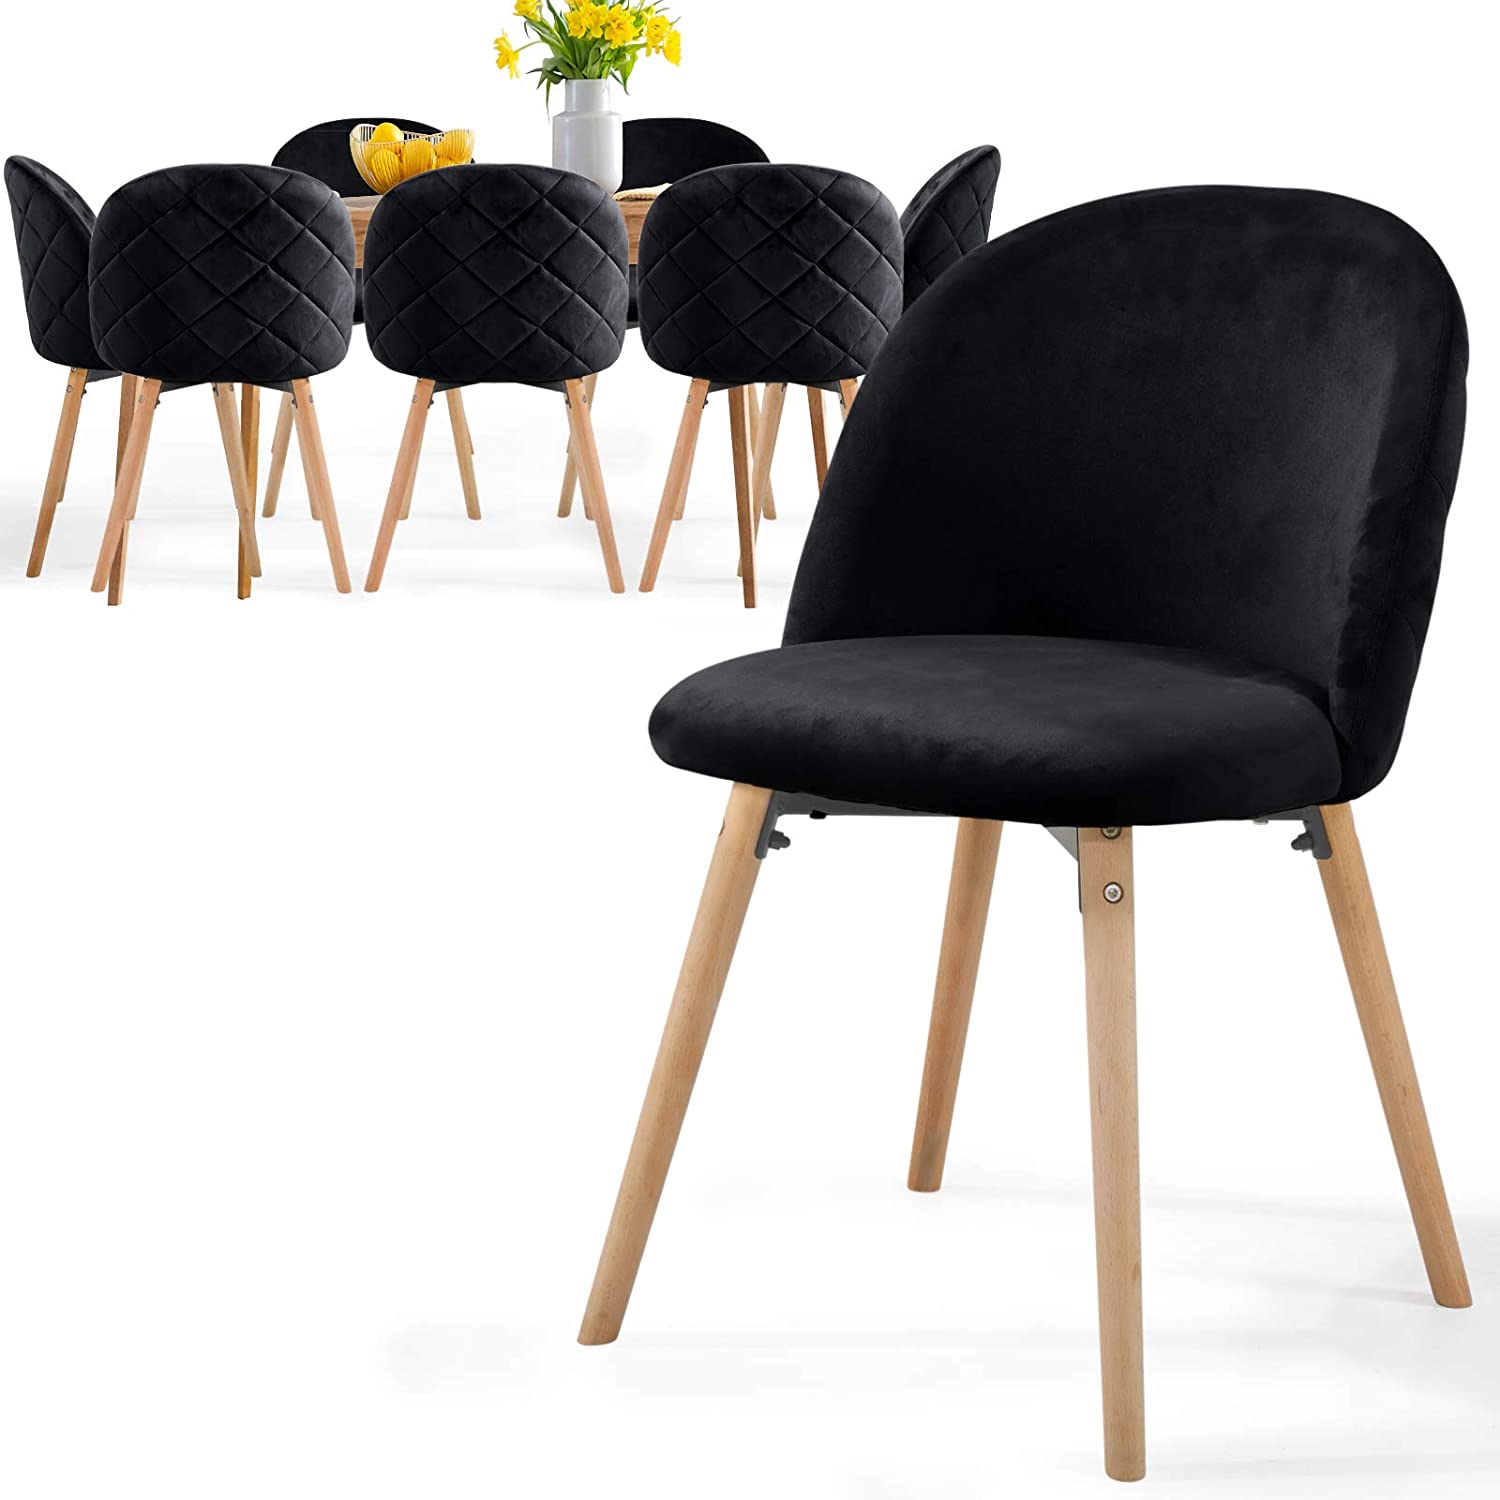 Eetkamerstoelen – Lounge stoelen – Scandinavisch – Retro – Vintage – Gestoffeerd – Set van 8 – Zwart